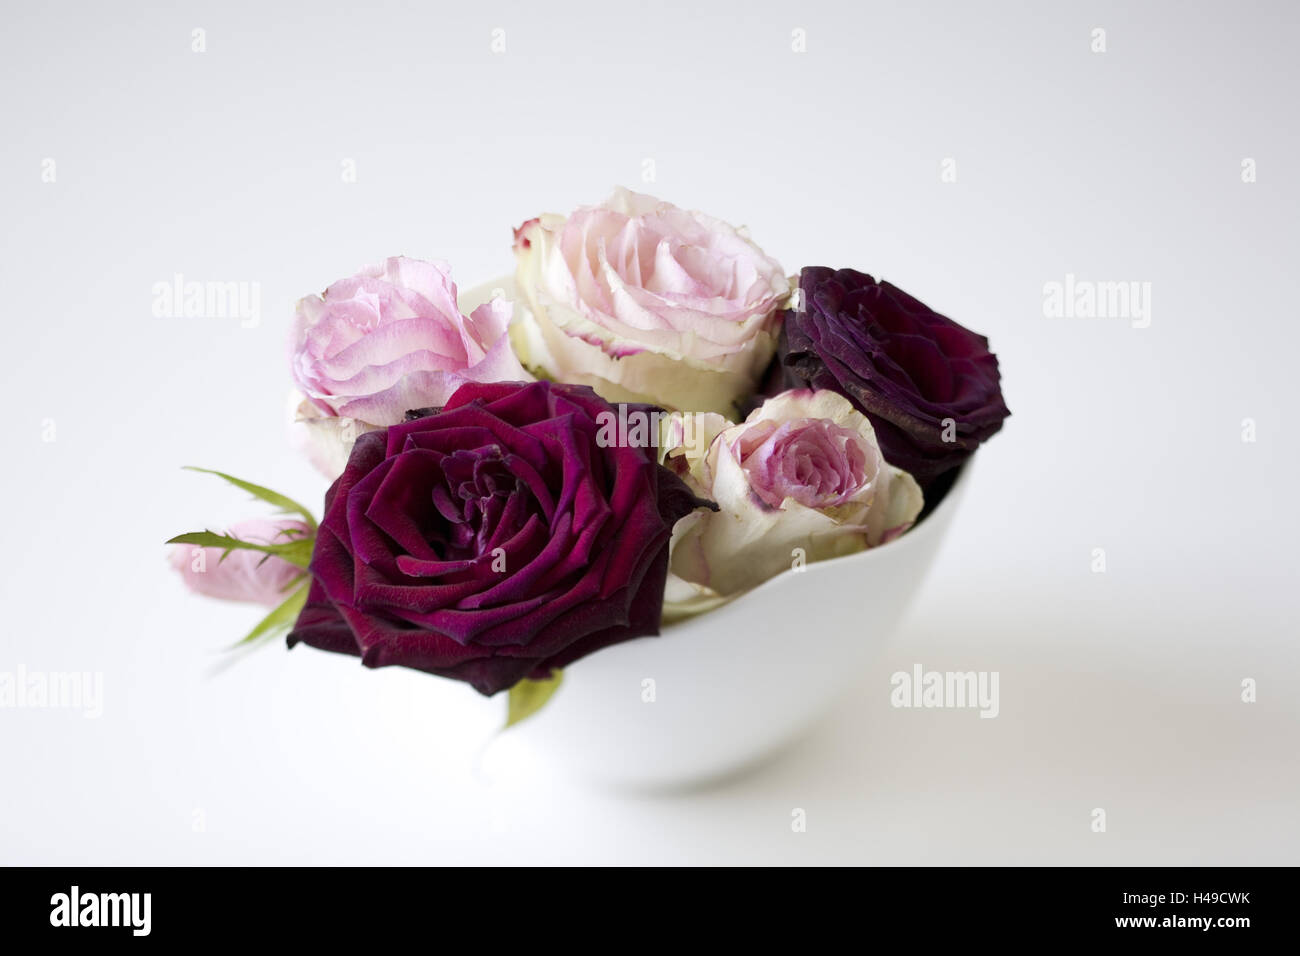 Stieg und dunkel rote Rosen auf weißem Porzellan Schale, Stockfoto